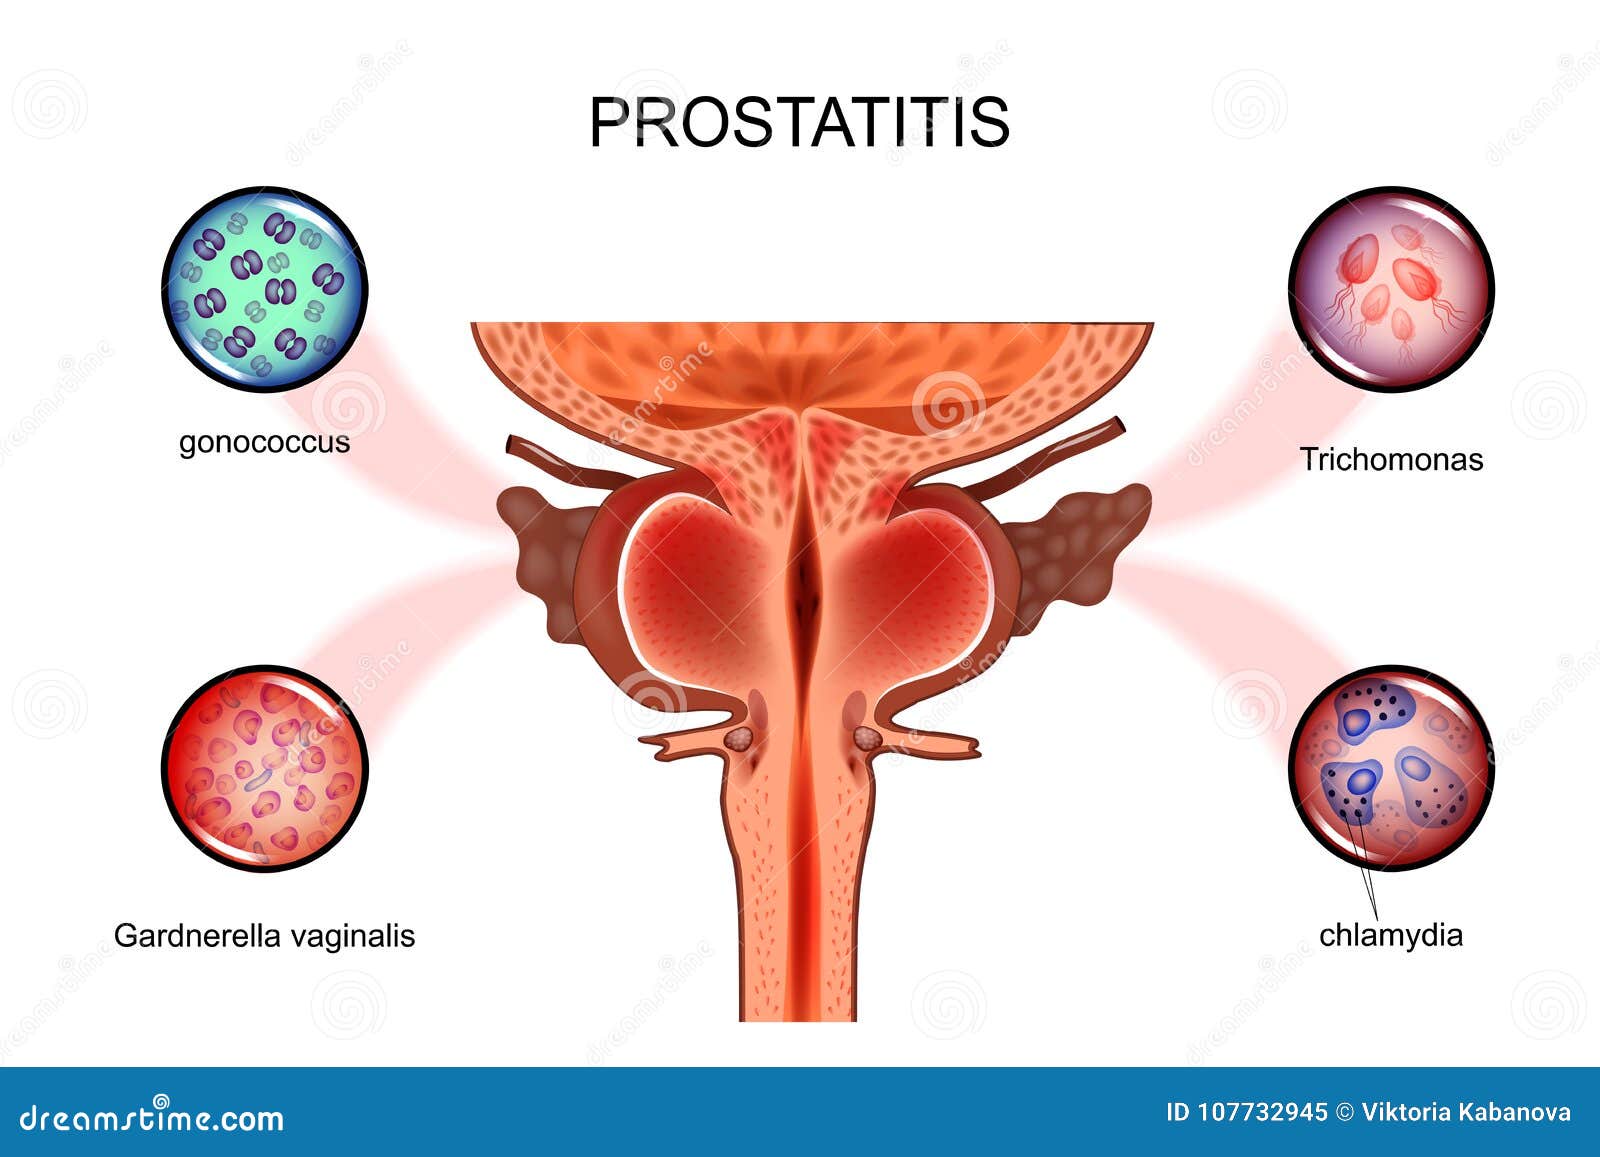 prostatitis 20 éven belül okozza